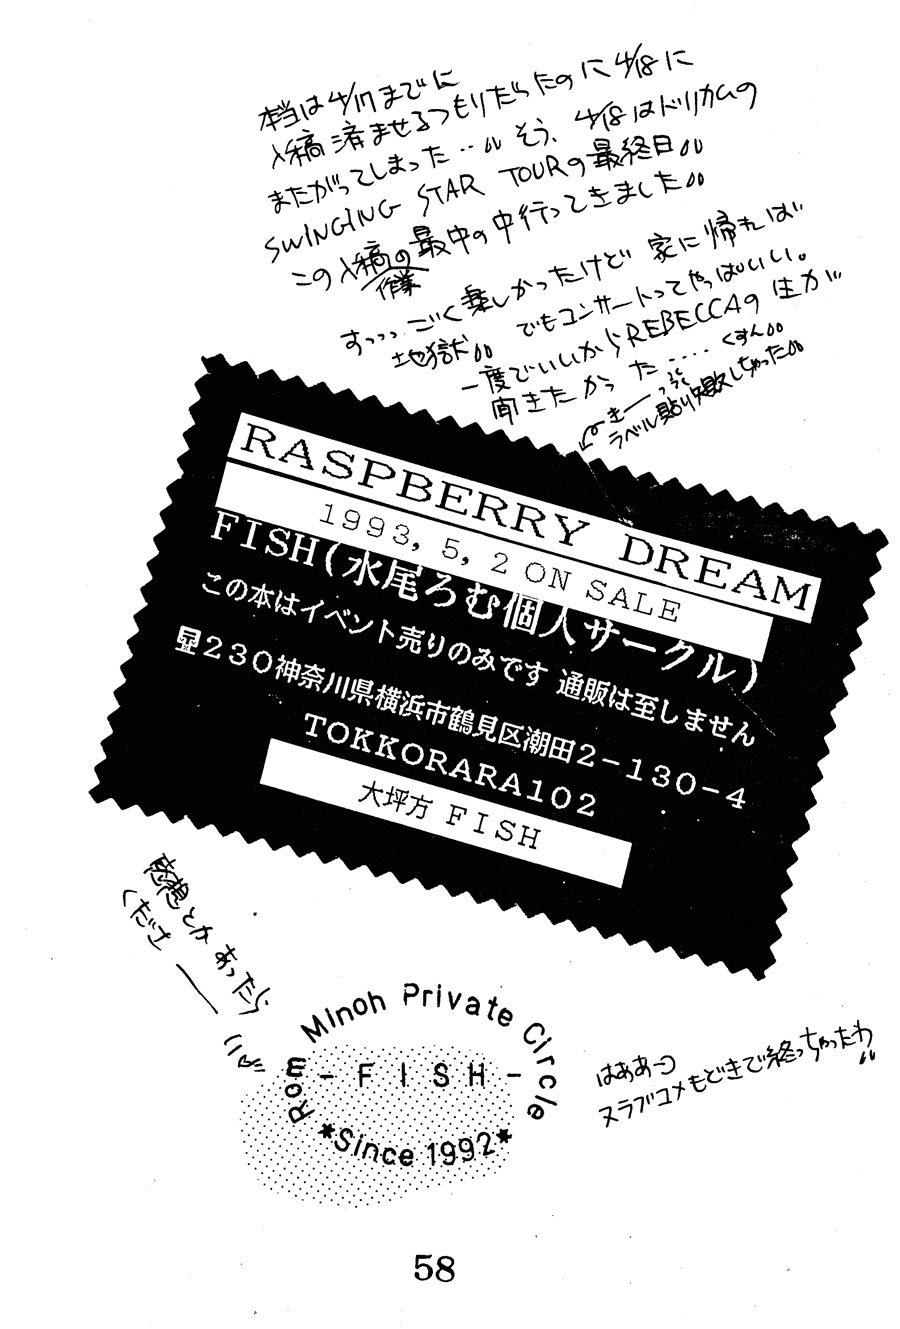 【漫画】FISH/水尾ろむ《Raspberry Dream》 Img19637